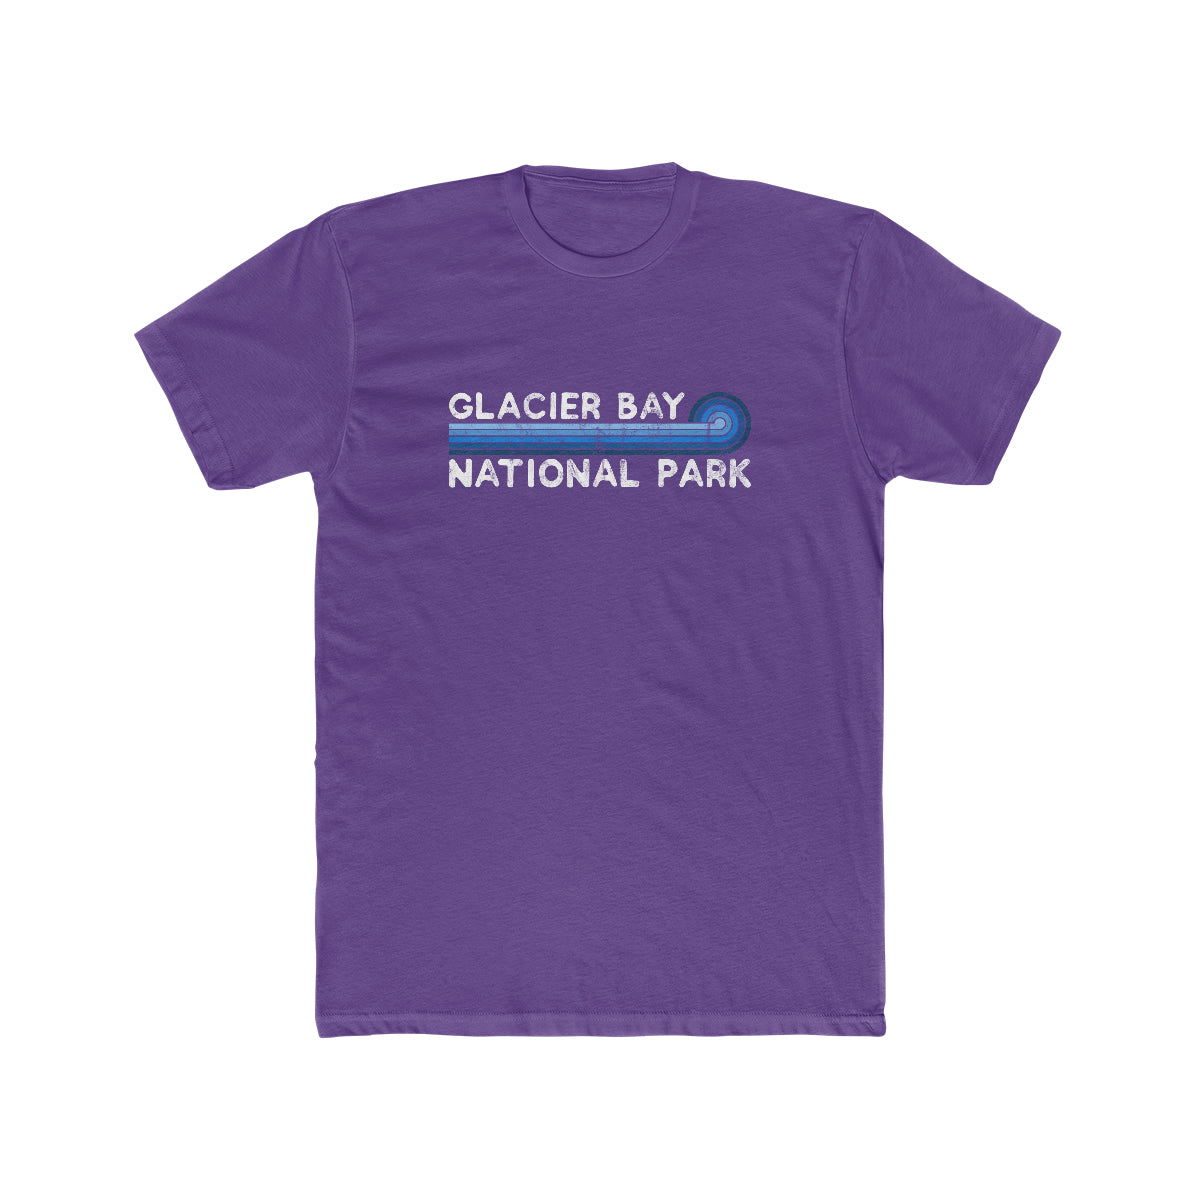 Glacier Bay National Park T-Shirt - Blue Vintage Stretched Sunrise